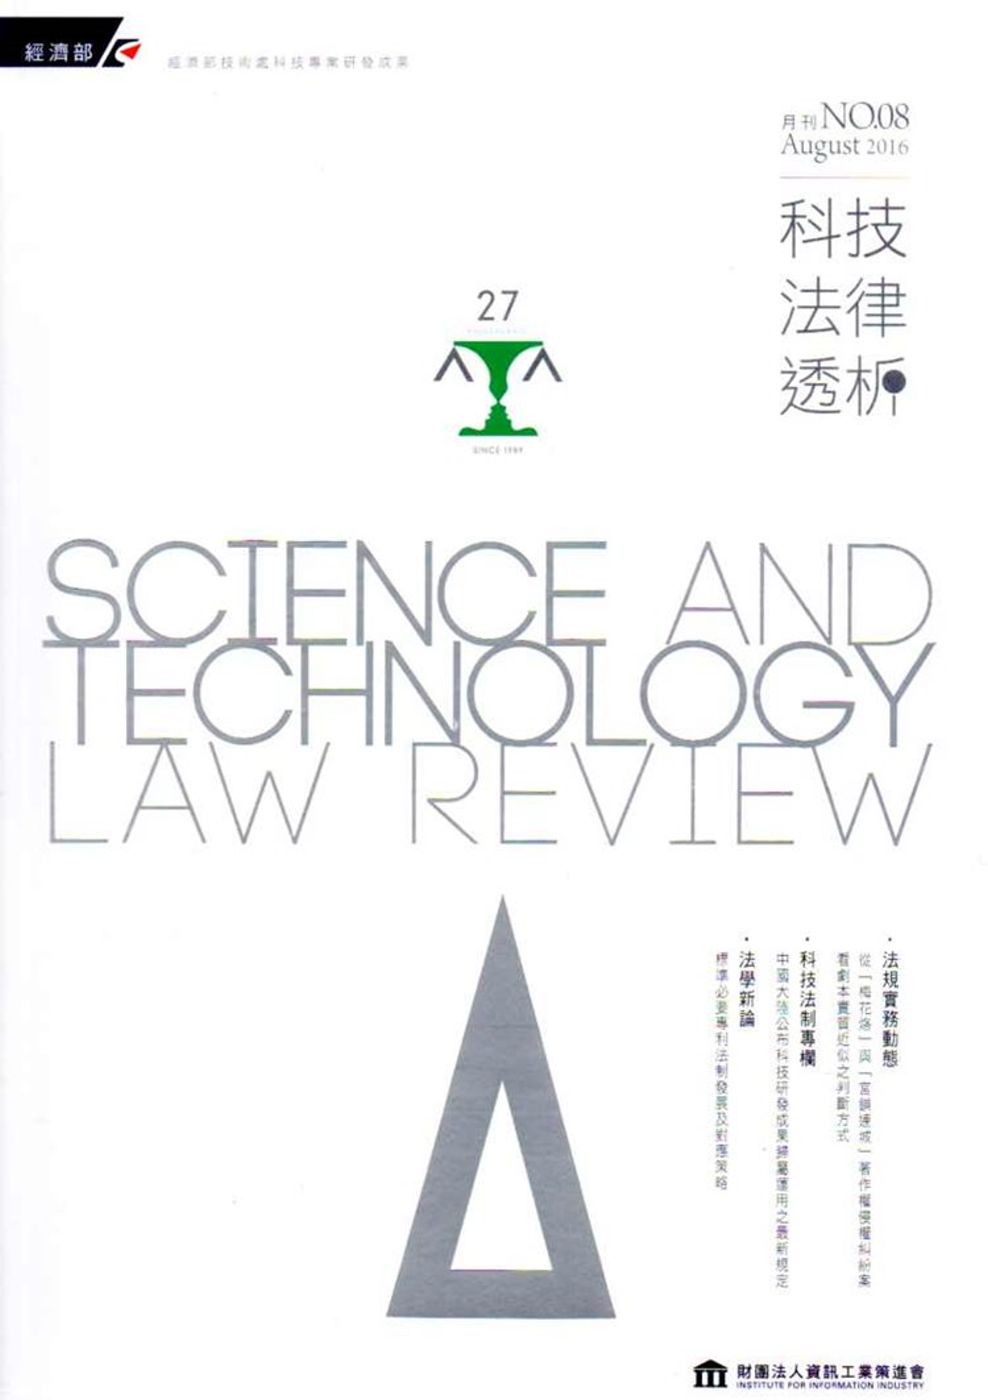 科技法律透析月刊第28卷第08期(105.08)